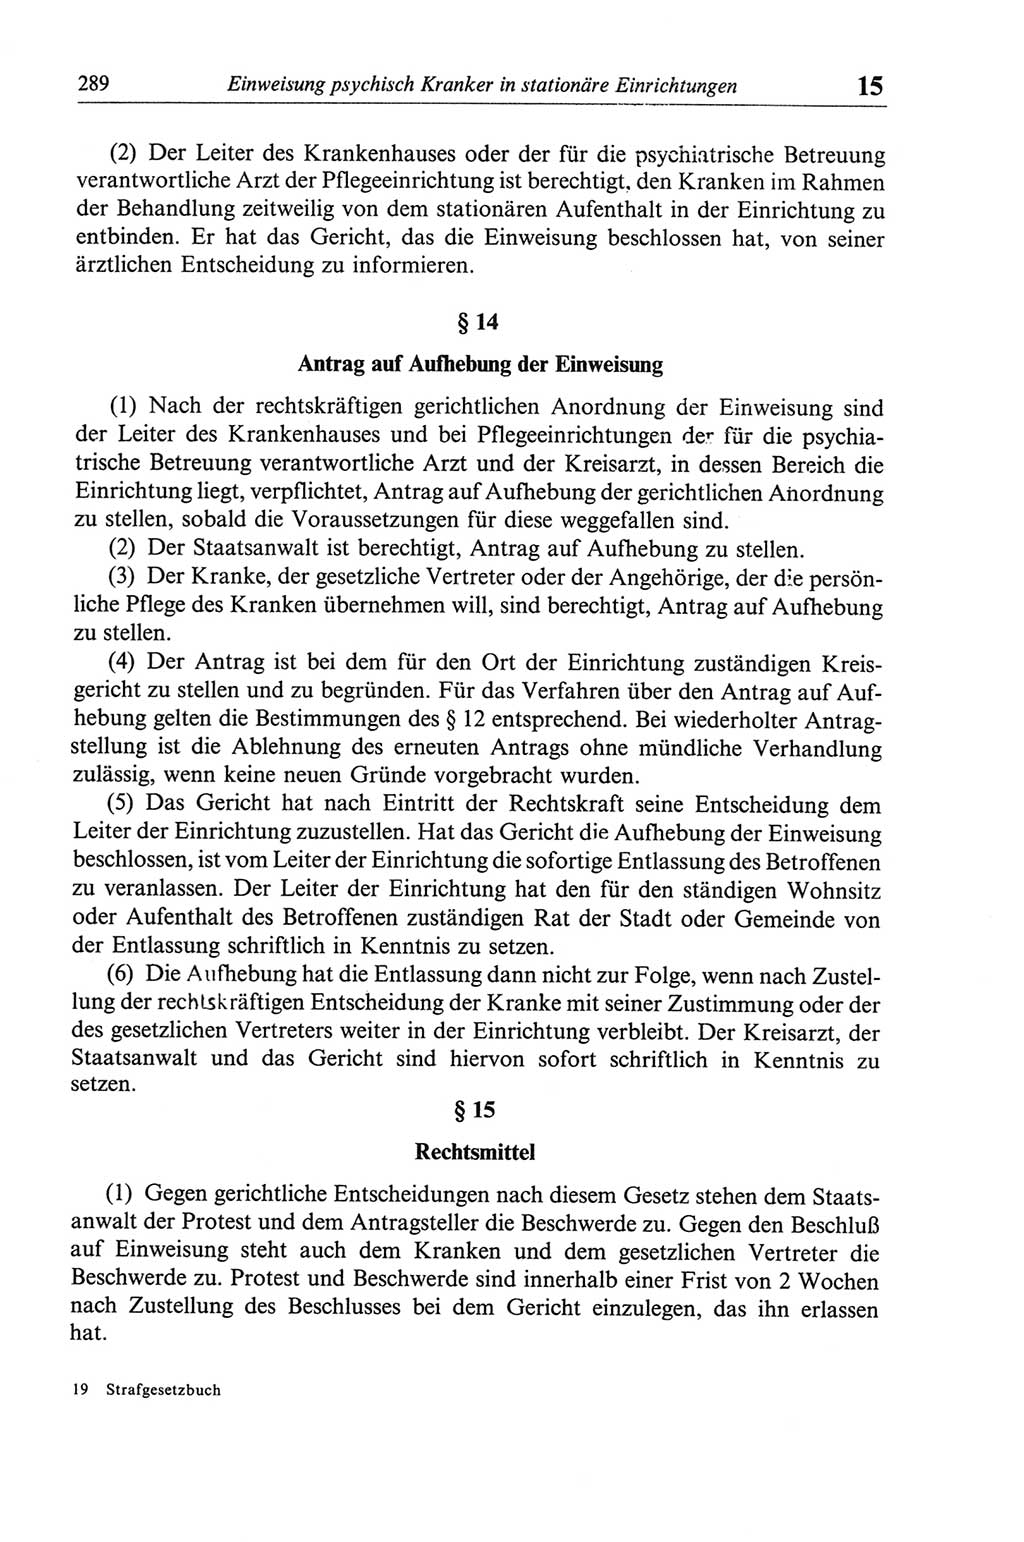 Strafgesetzbuch (StGB) der Deutschen Demokratischen Republik (DDR) und angrenzende Gesetze und Bestimmungen 1968, Seite 289 (StGB Ges. Best. DDR 1968, S. 289)